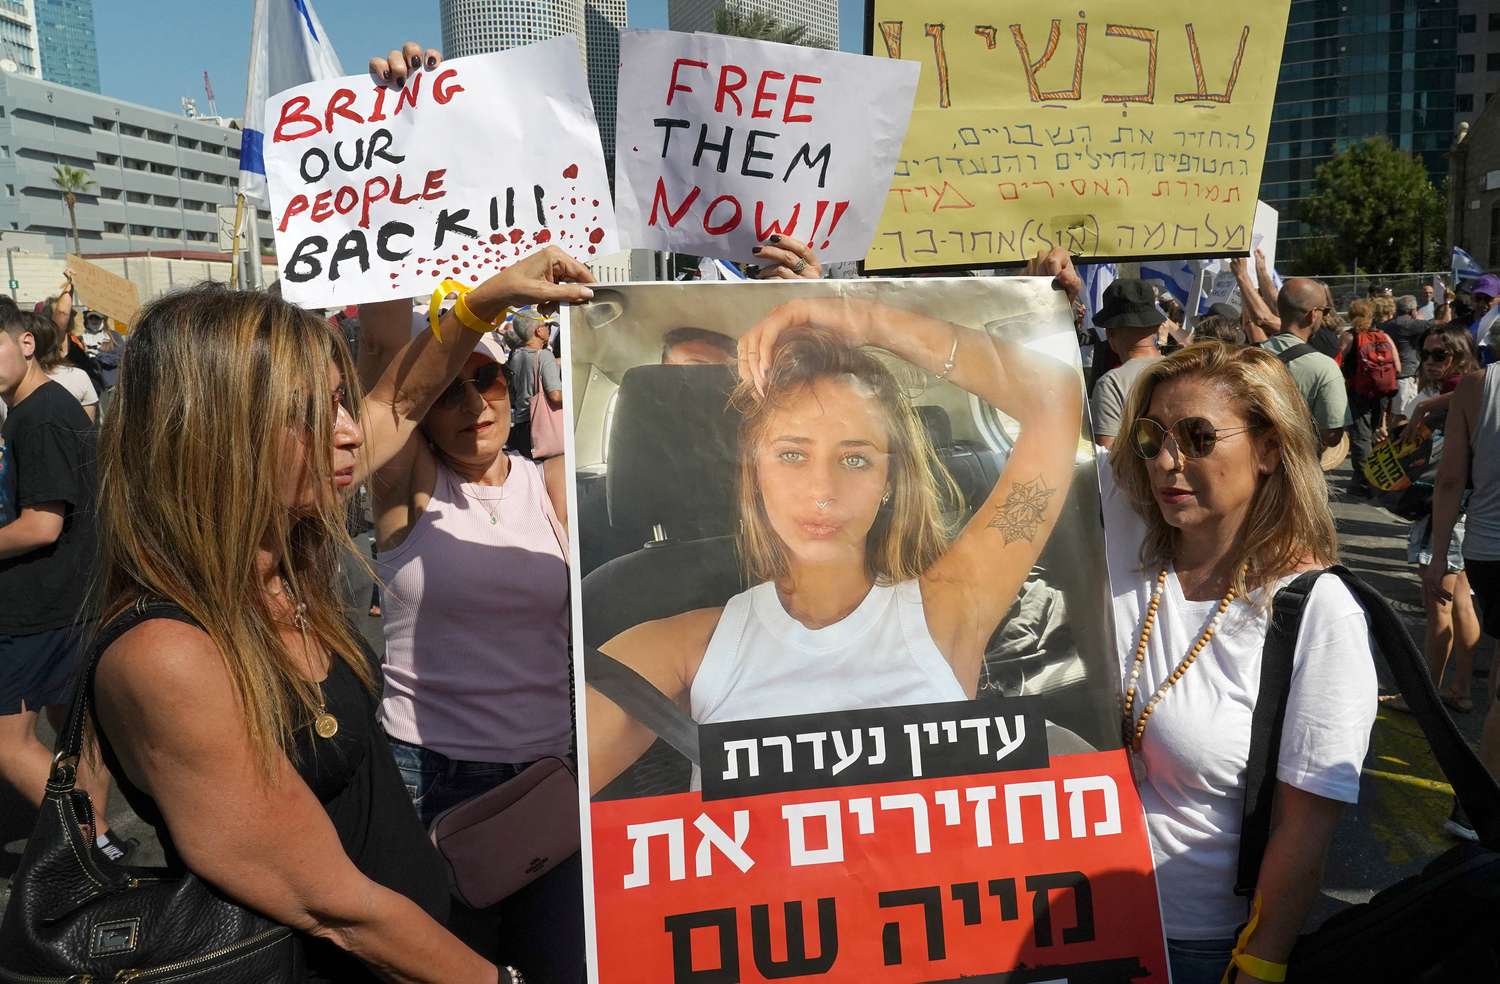 Las manifestaciones por el regreso de los israelíes tomados como rehenes son constantes.